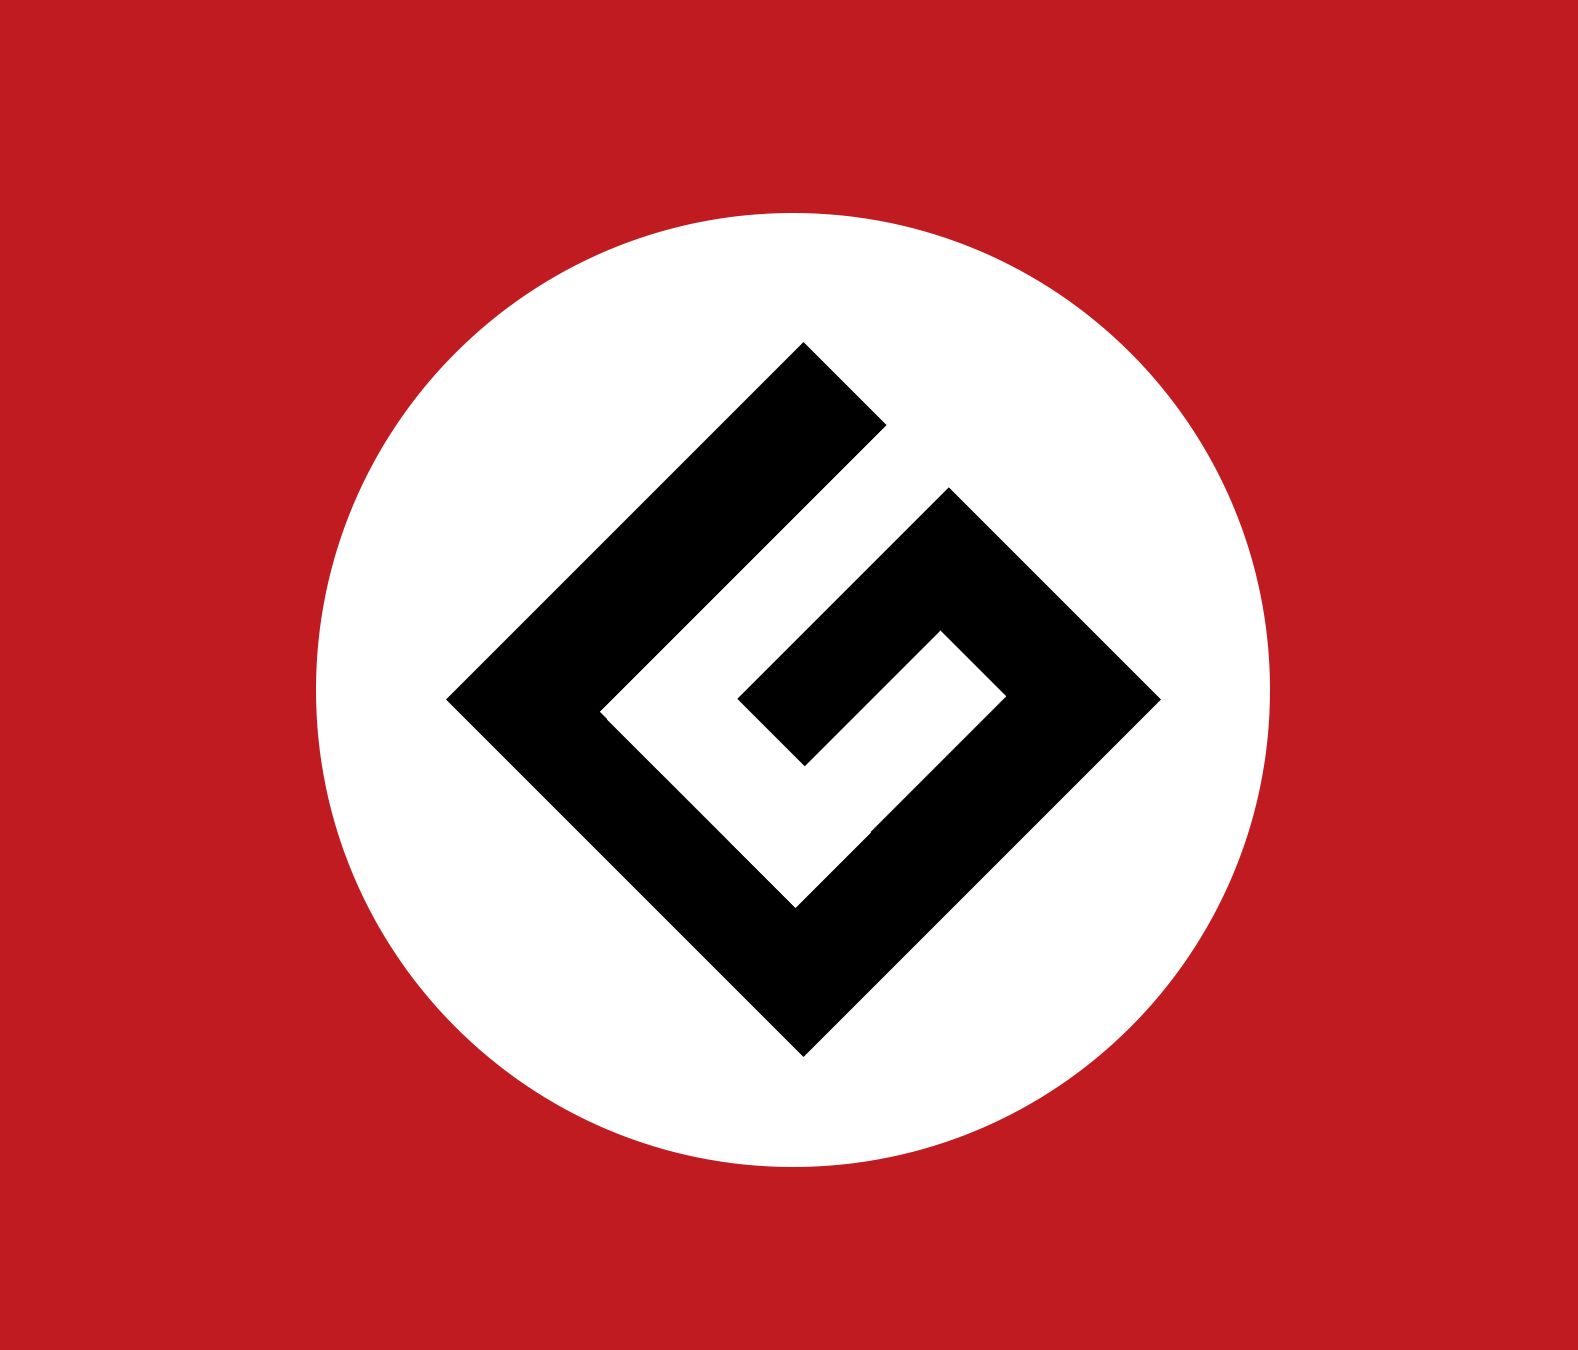 Grammar Nazi flag Meme Generator. 